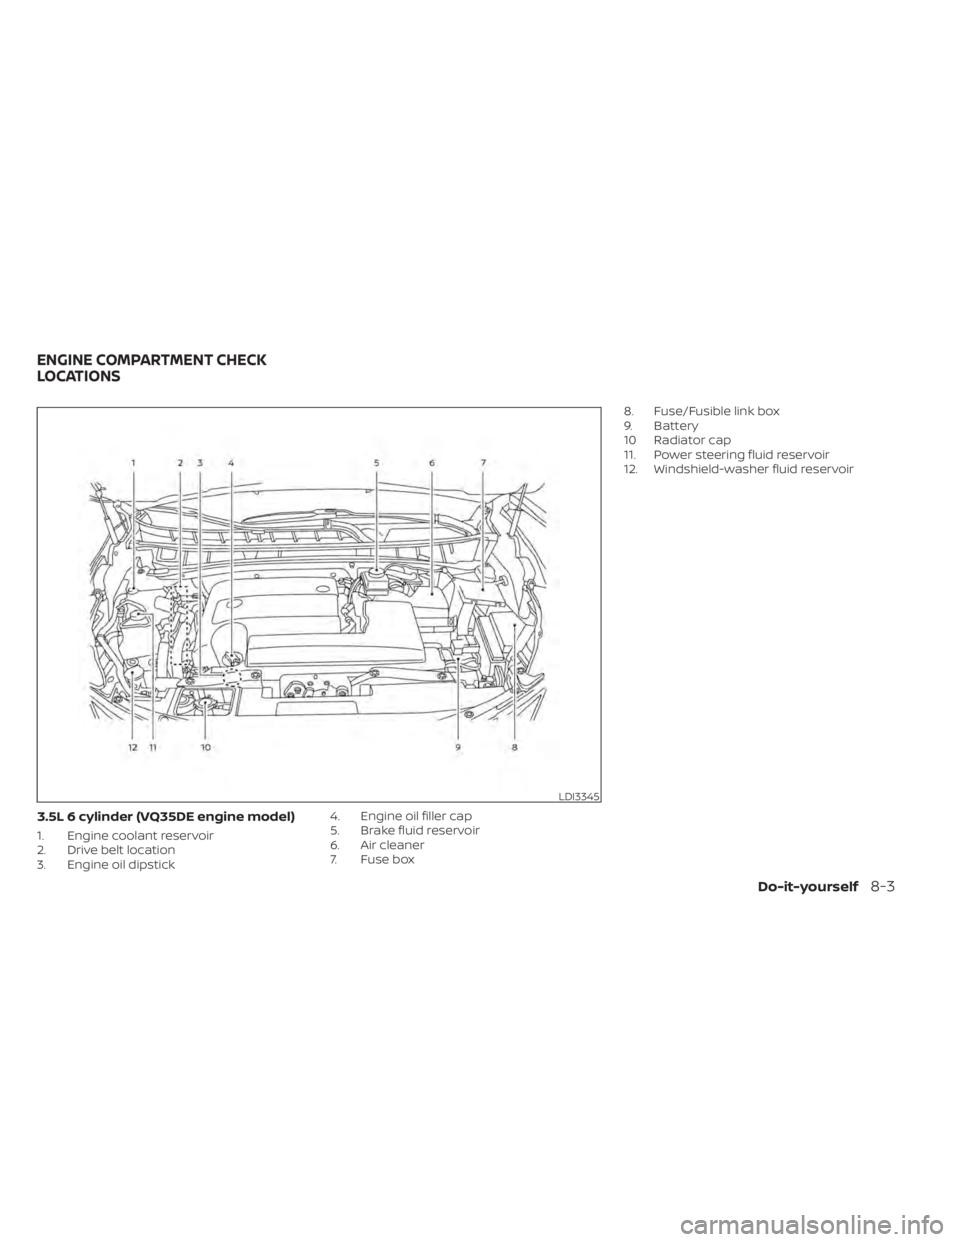 NISSAN MURANO 2021  Owner´s Manual 3.5L 6 cylinder (VQ35DE engine model)
1. Engine coolant reservoir
2. Drive belt location
3. Engine oil dipstick4. Engine oil filler cap
5. Brake fluid reservoir
6. Air cleaner
7. Fuse box8. Fuse/Fusib